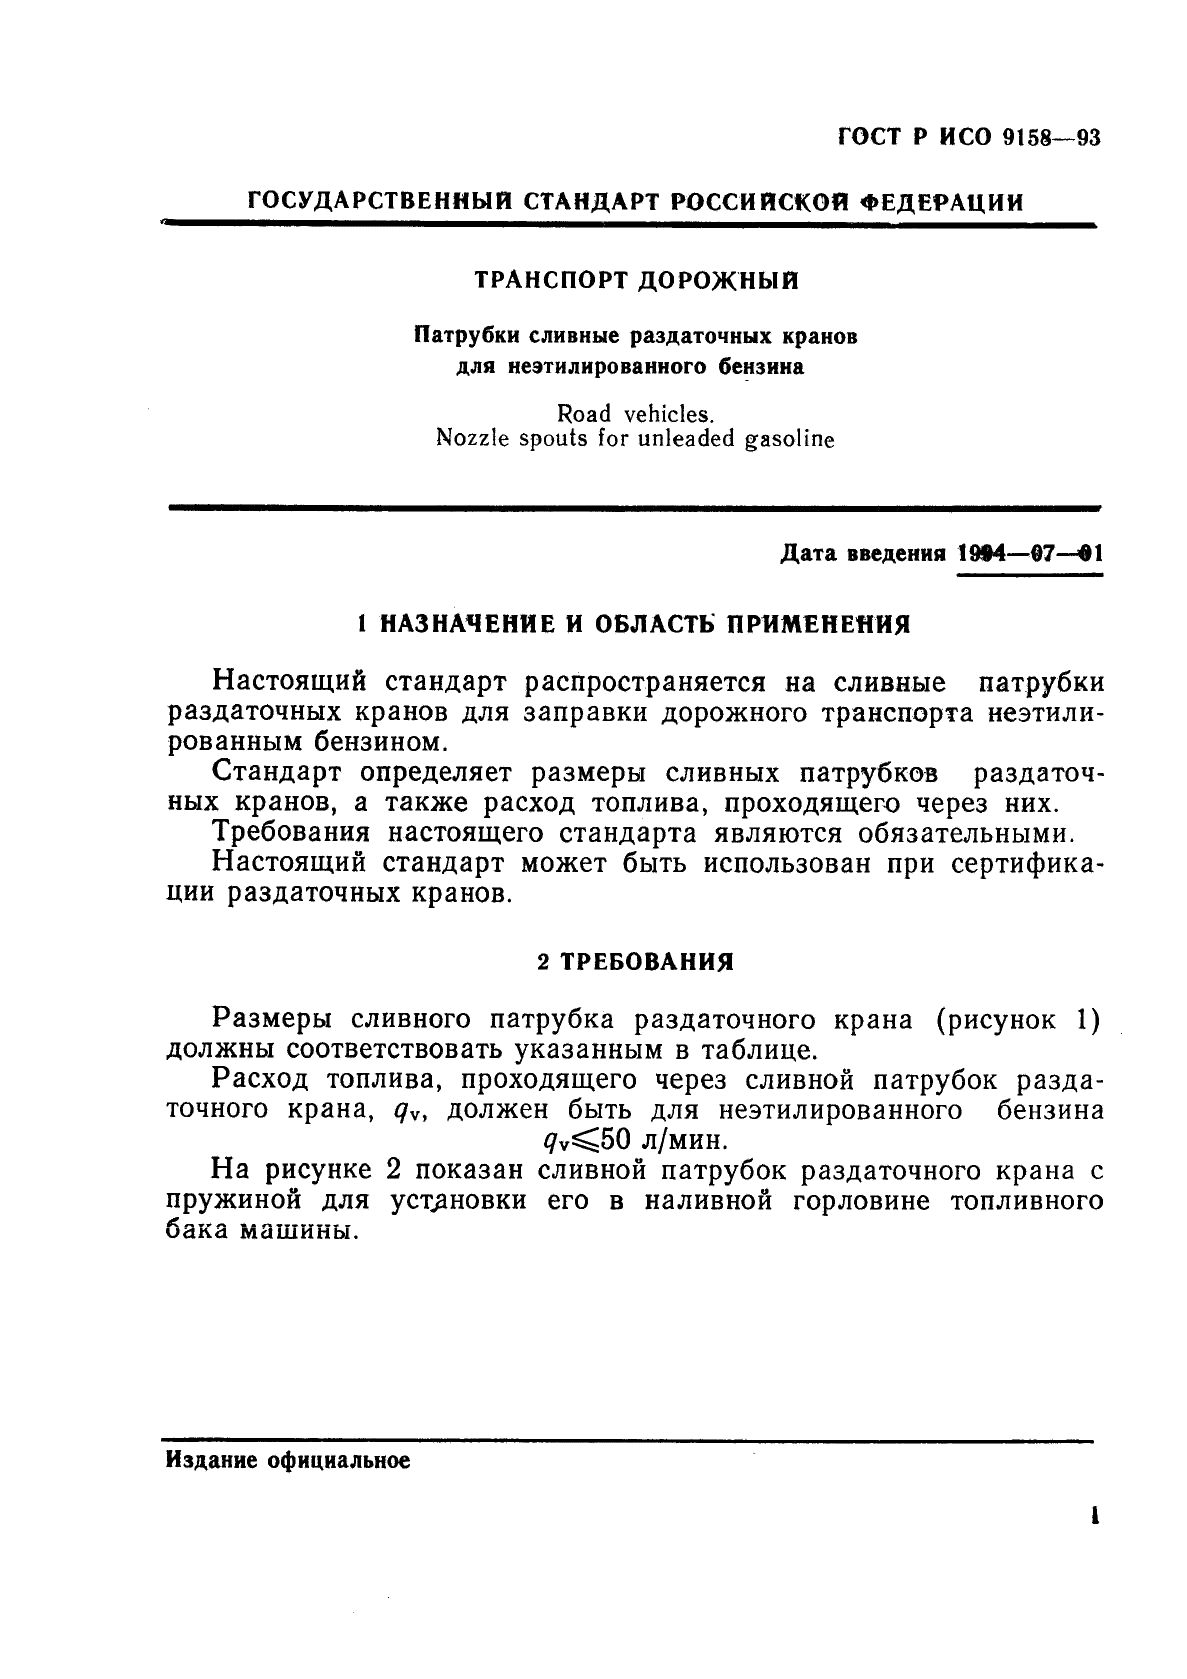 ГОСТ Р ИСО 9158-93